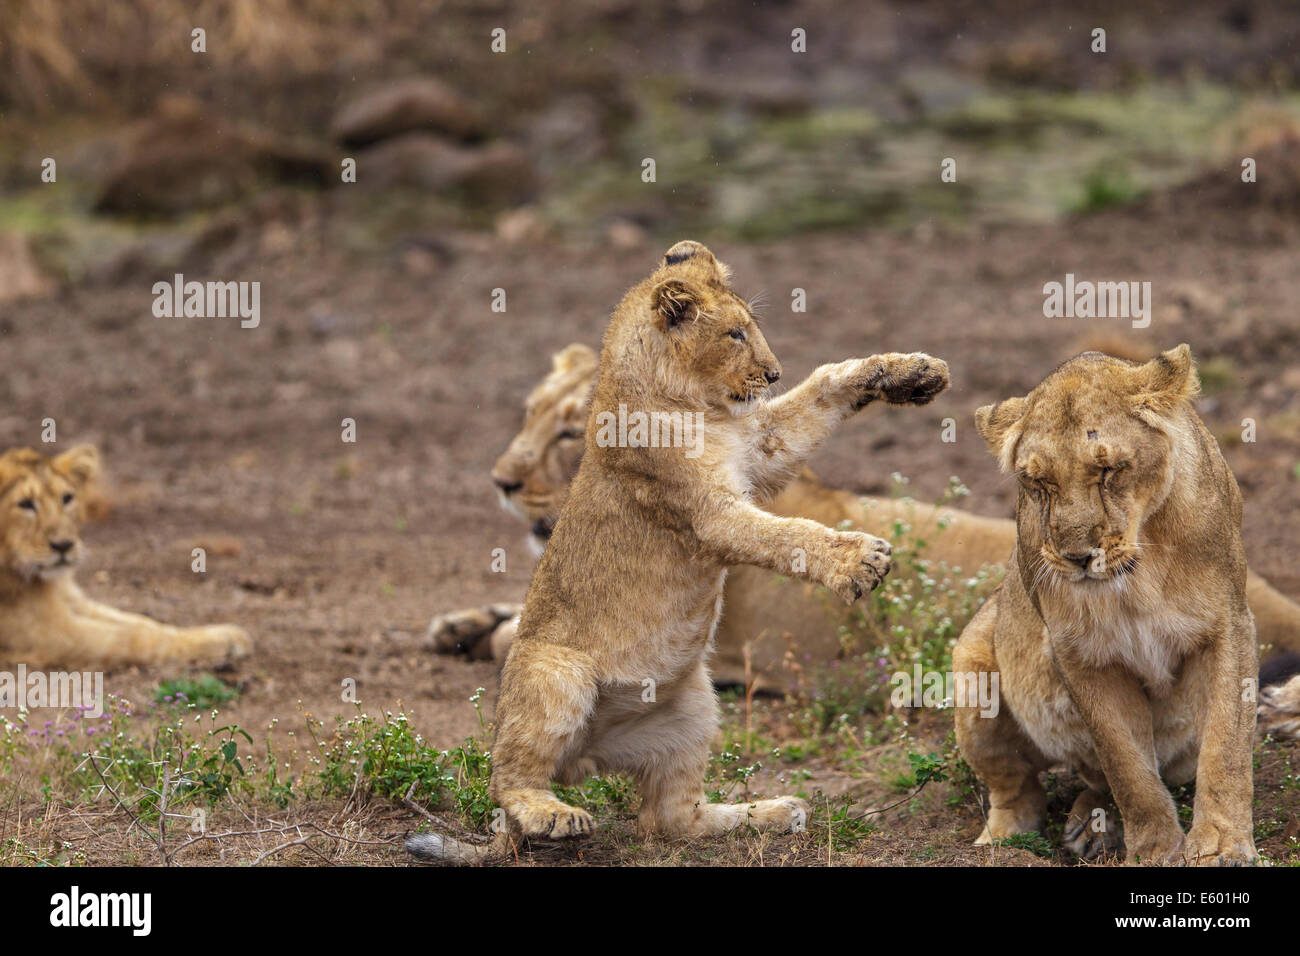 Les Lions indiens Cub dans une action ludique [Panthera leo persica] au RIF Forêt, Gujarat Inde. Banque D'Images